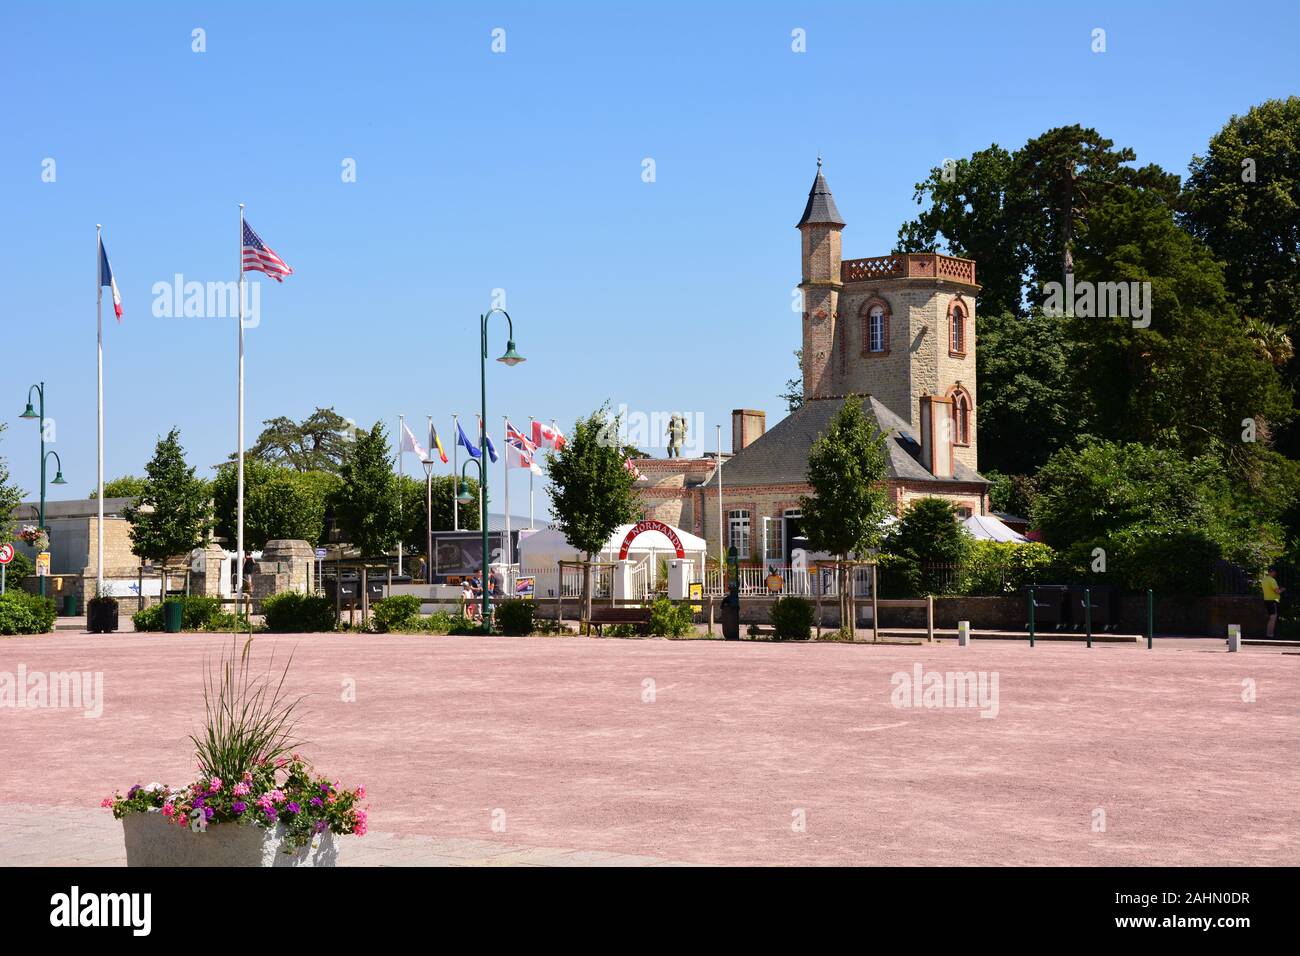 La place à St Mère Eglise, France, le premier village en Normandie libérée par l'armée des États-Unis le jour J, le 6 juin 1944. Banque D'Images